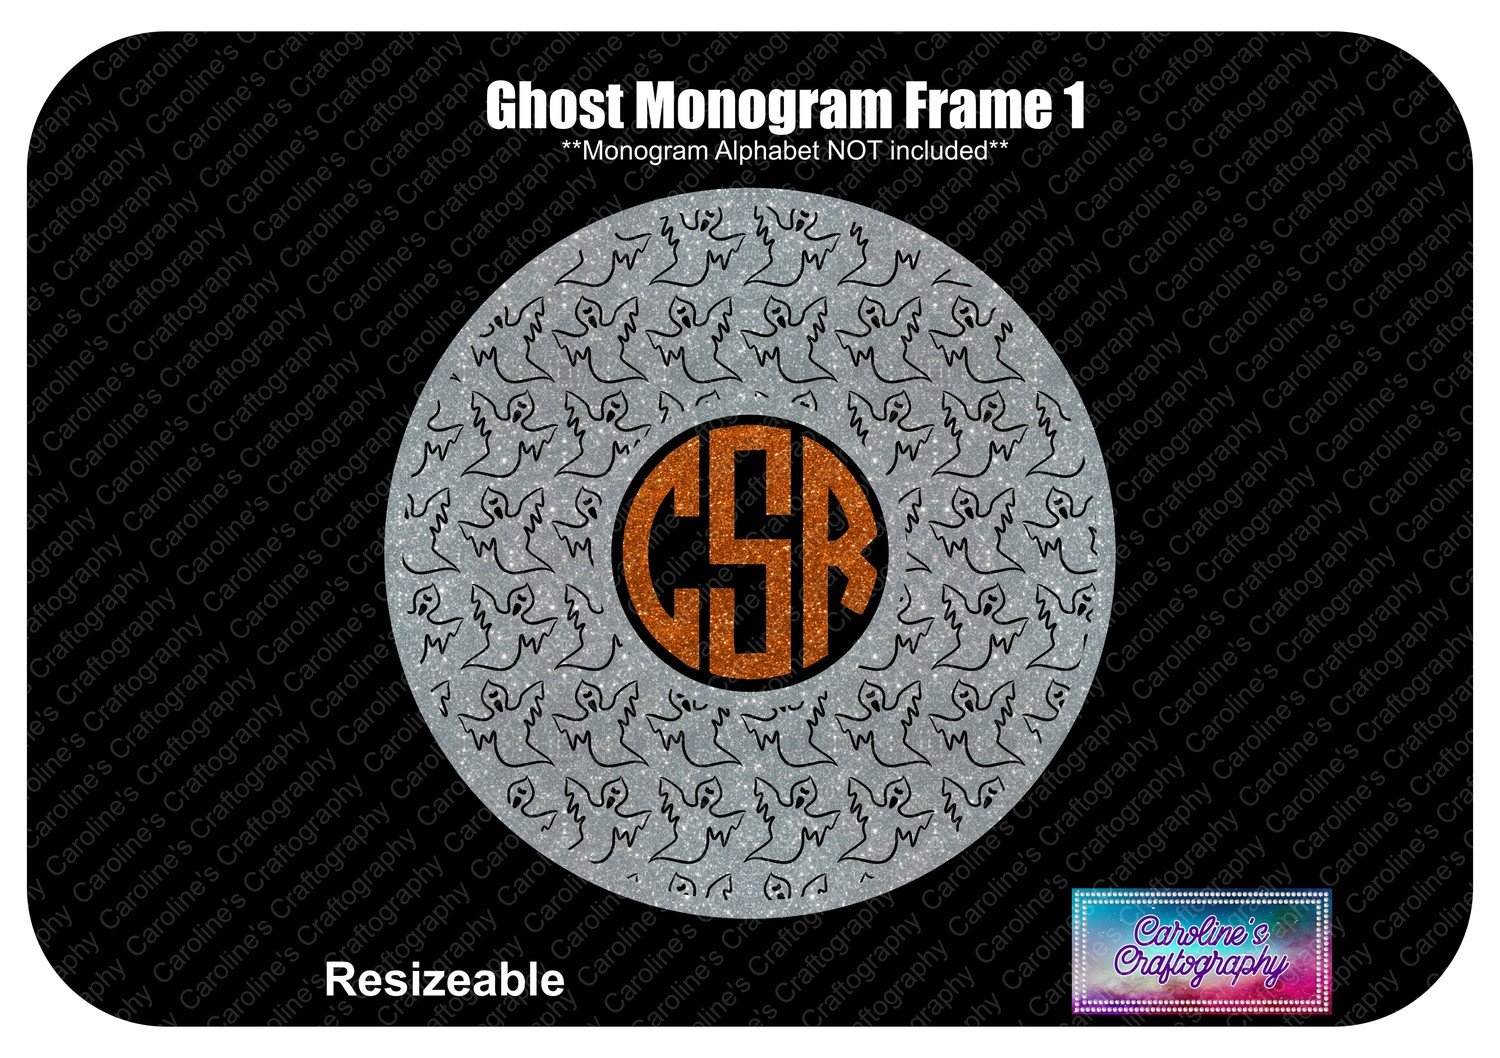 Ghost Monogram Frame 1 Vinyl